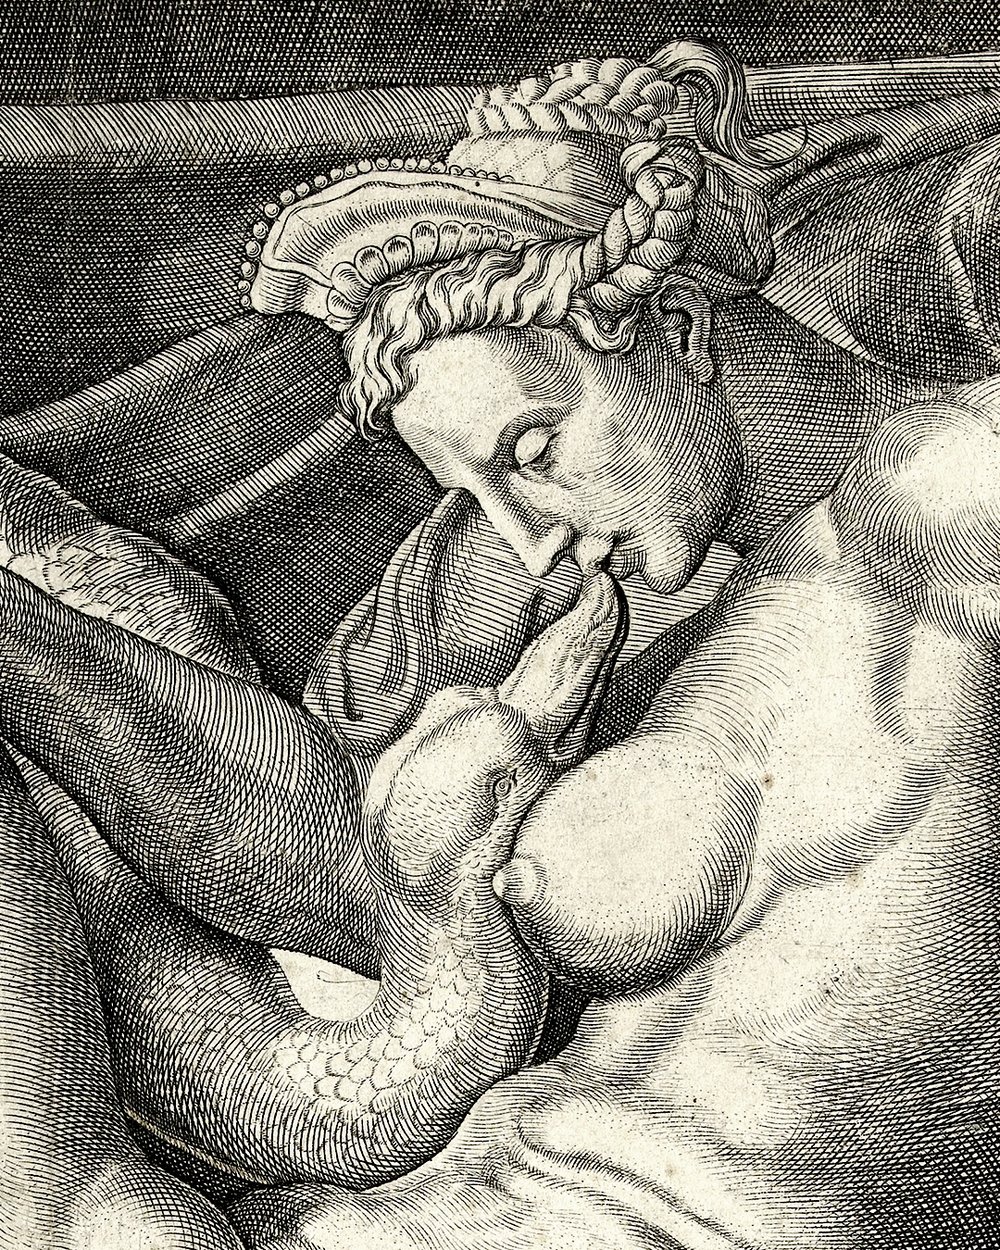 "Leda and the swan" (1544 - 1600)